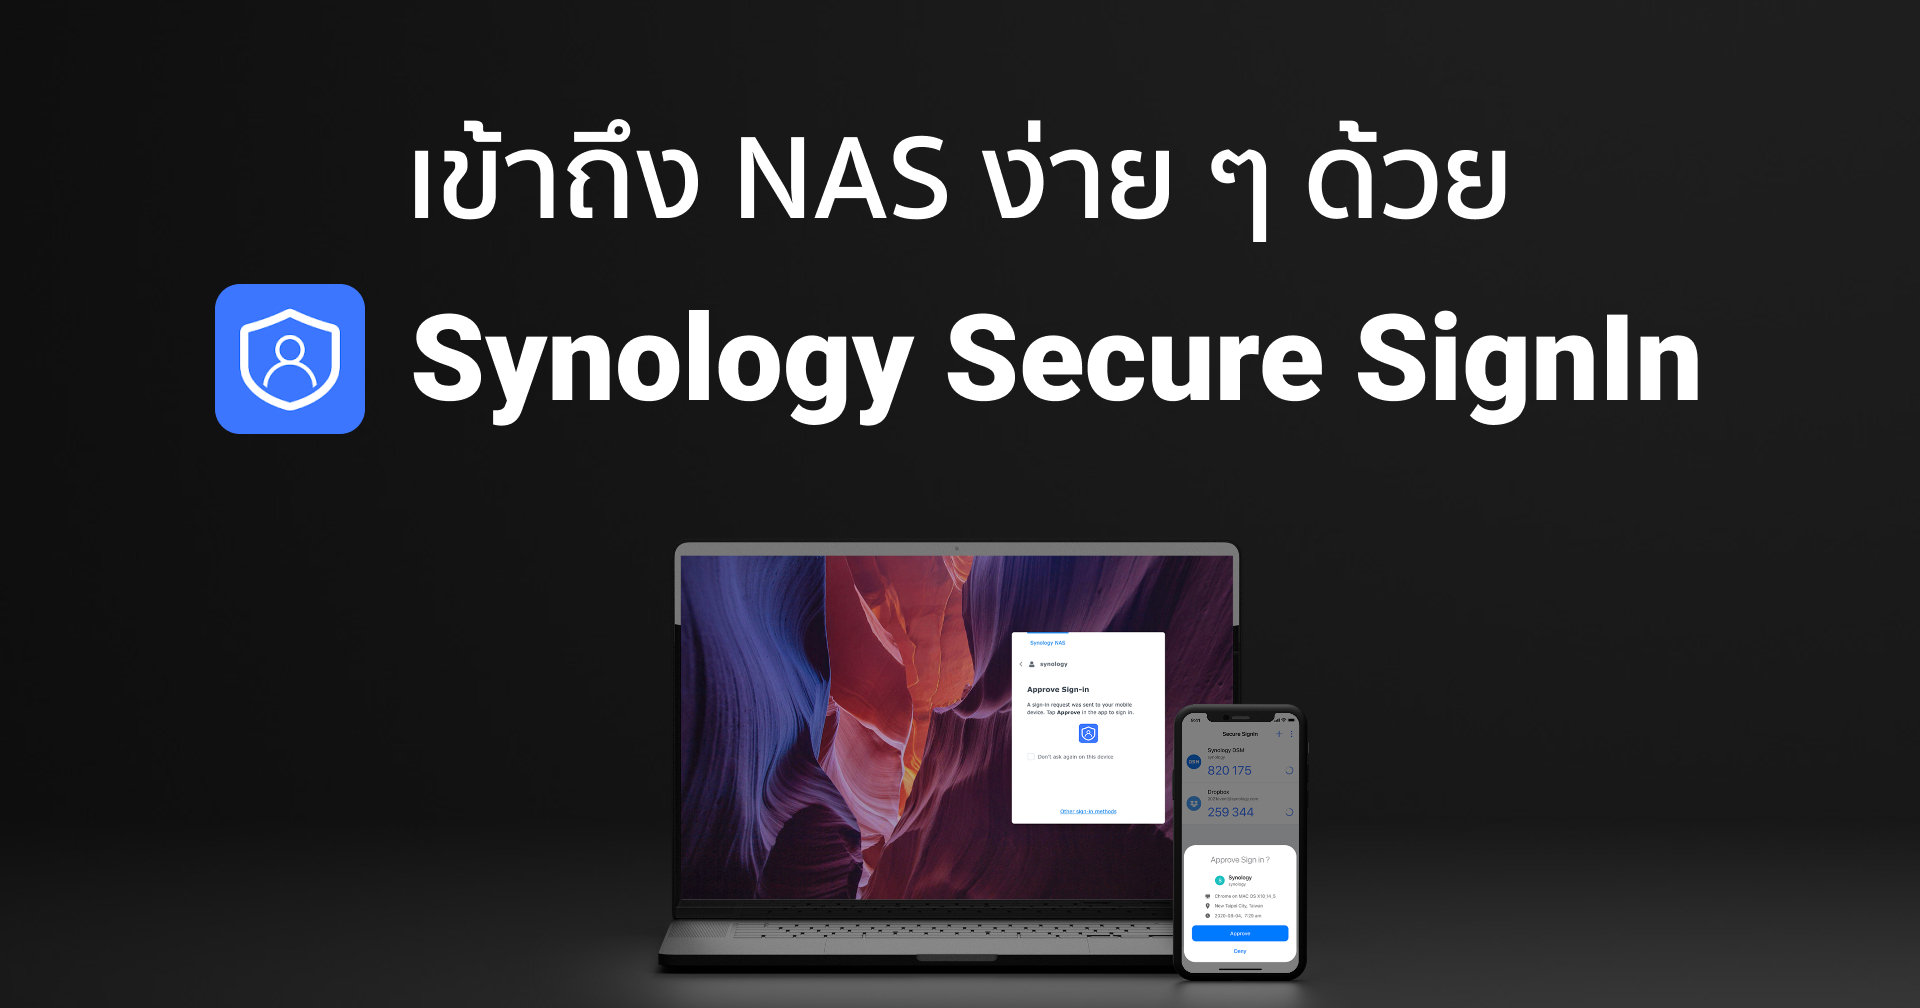 เข้าถึง NAS อย่างปลอดภัย เพียงคลิกเดียว ด้วย Synology Secure SignIn ไม่ต้องจำรหัสผ่านอีกต่อไป